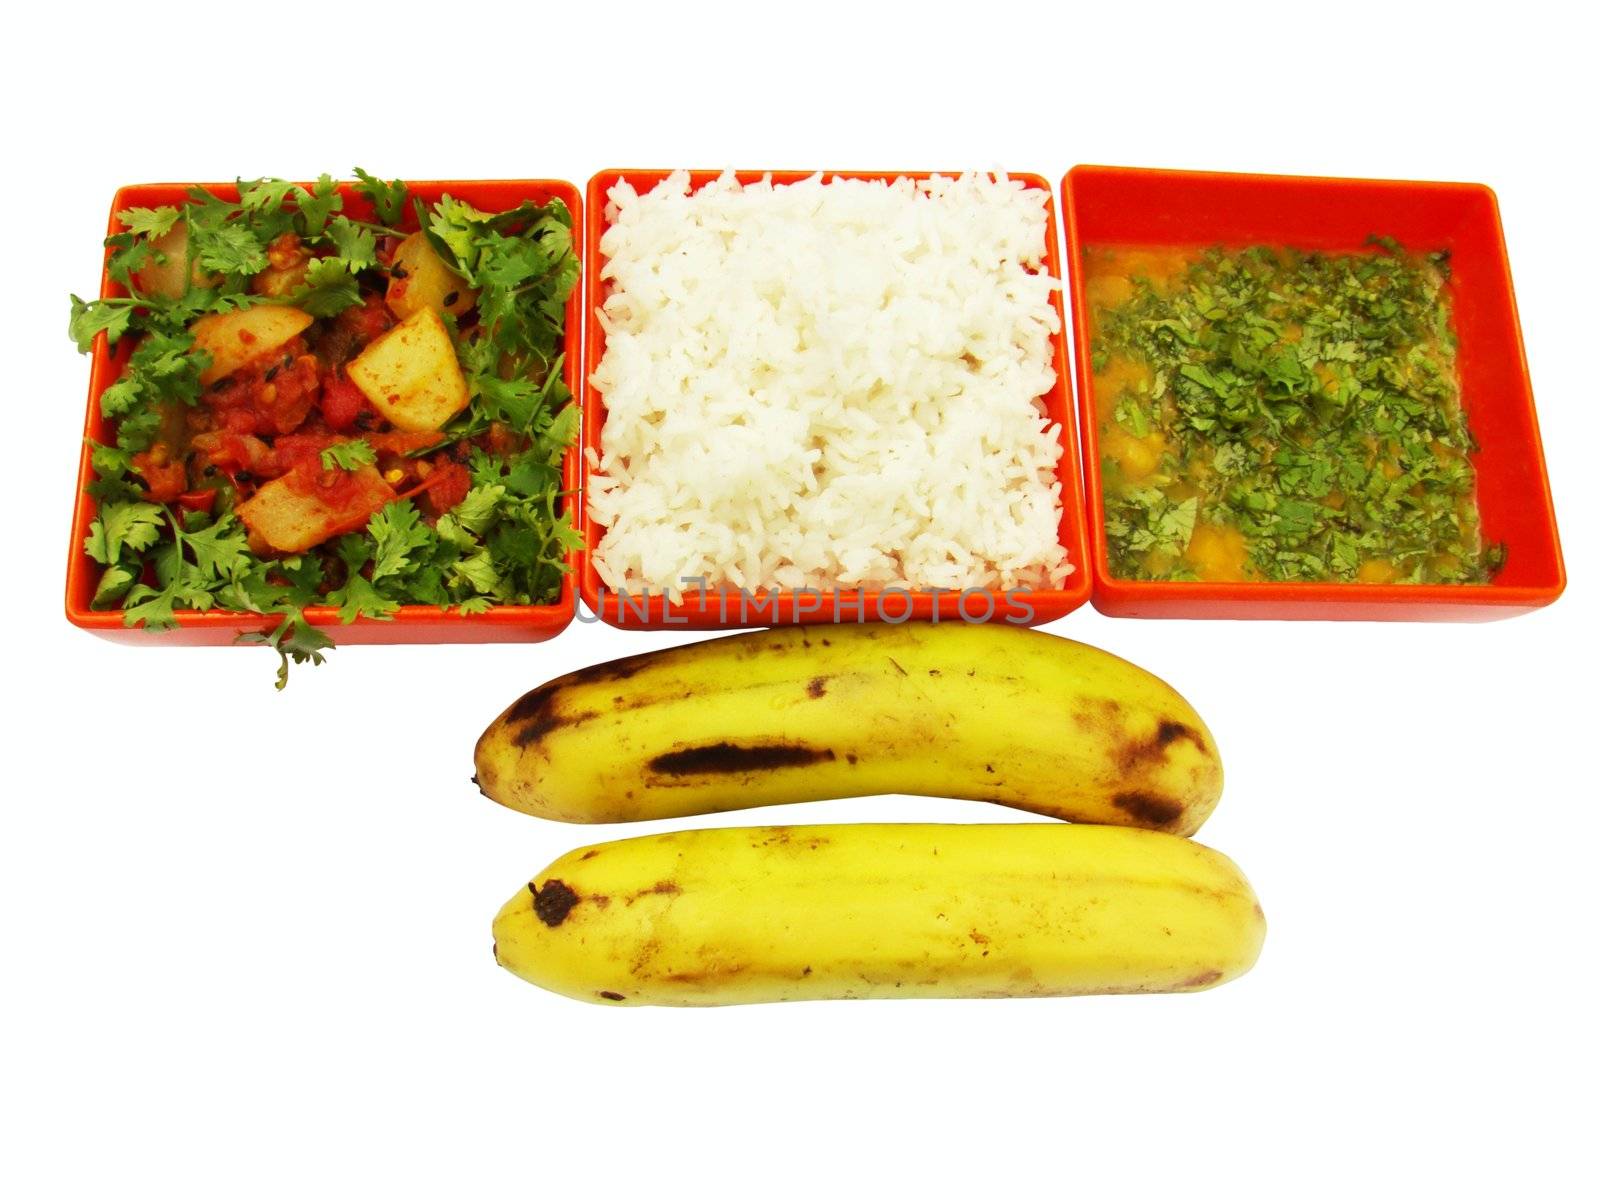 Vegetarian meal by lkant